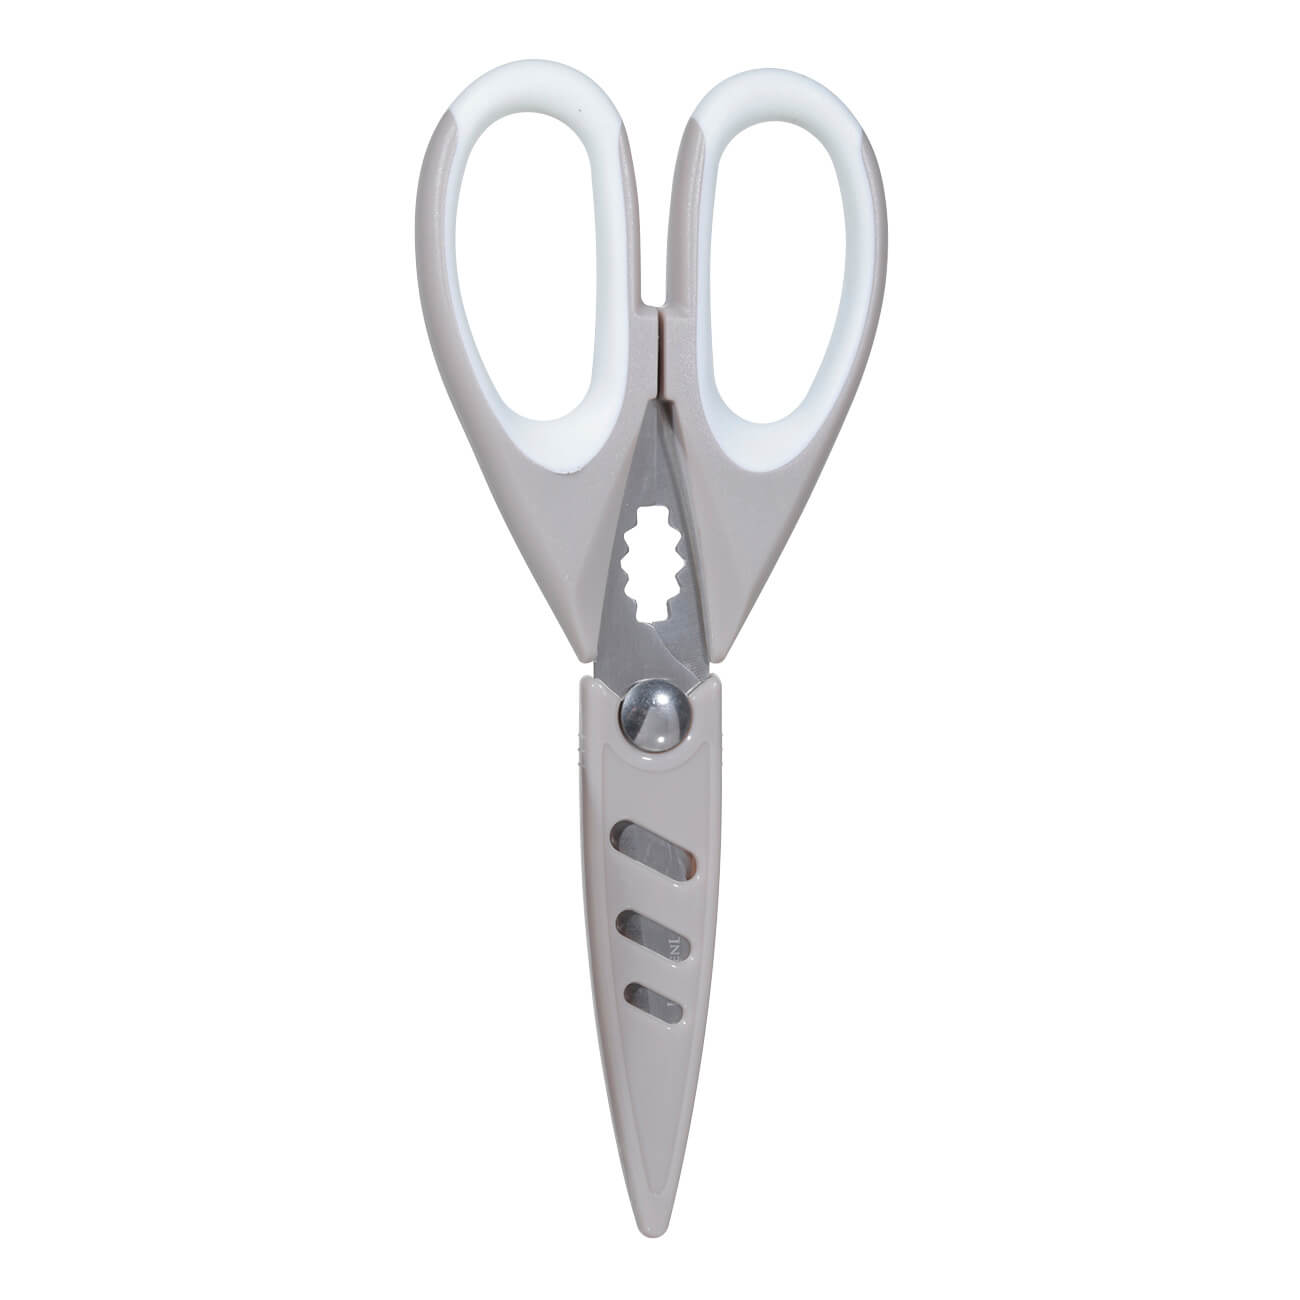 Ножницы кухонные, 22 см, с чехлом, сталь/пластик, бежевые, Assist кухонные ножницы huohou hu0068 powerful kitchen scissors